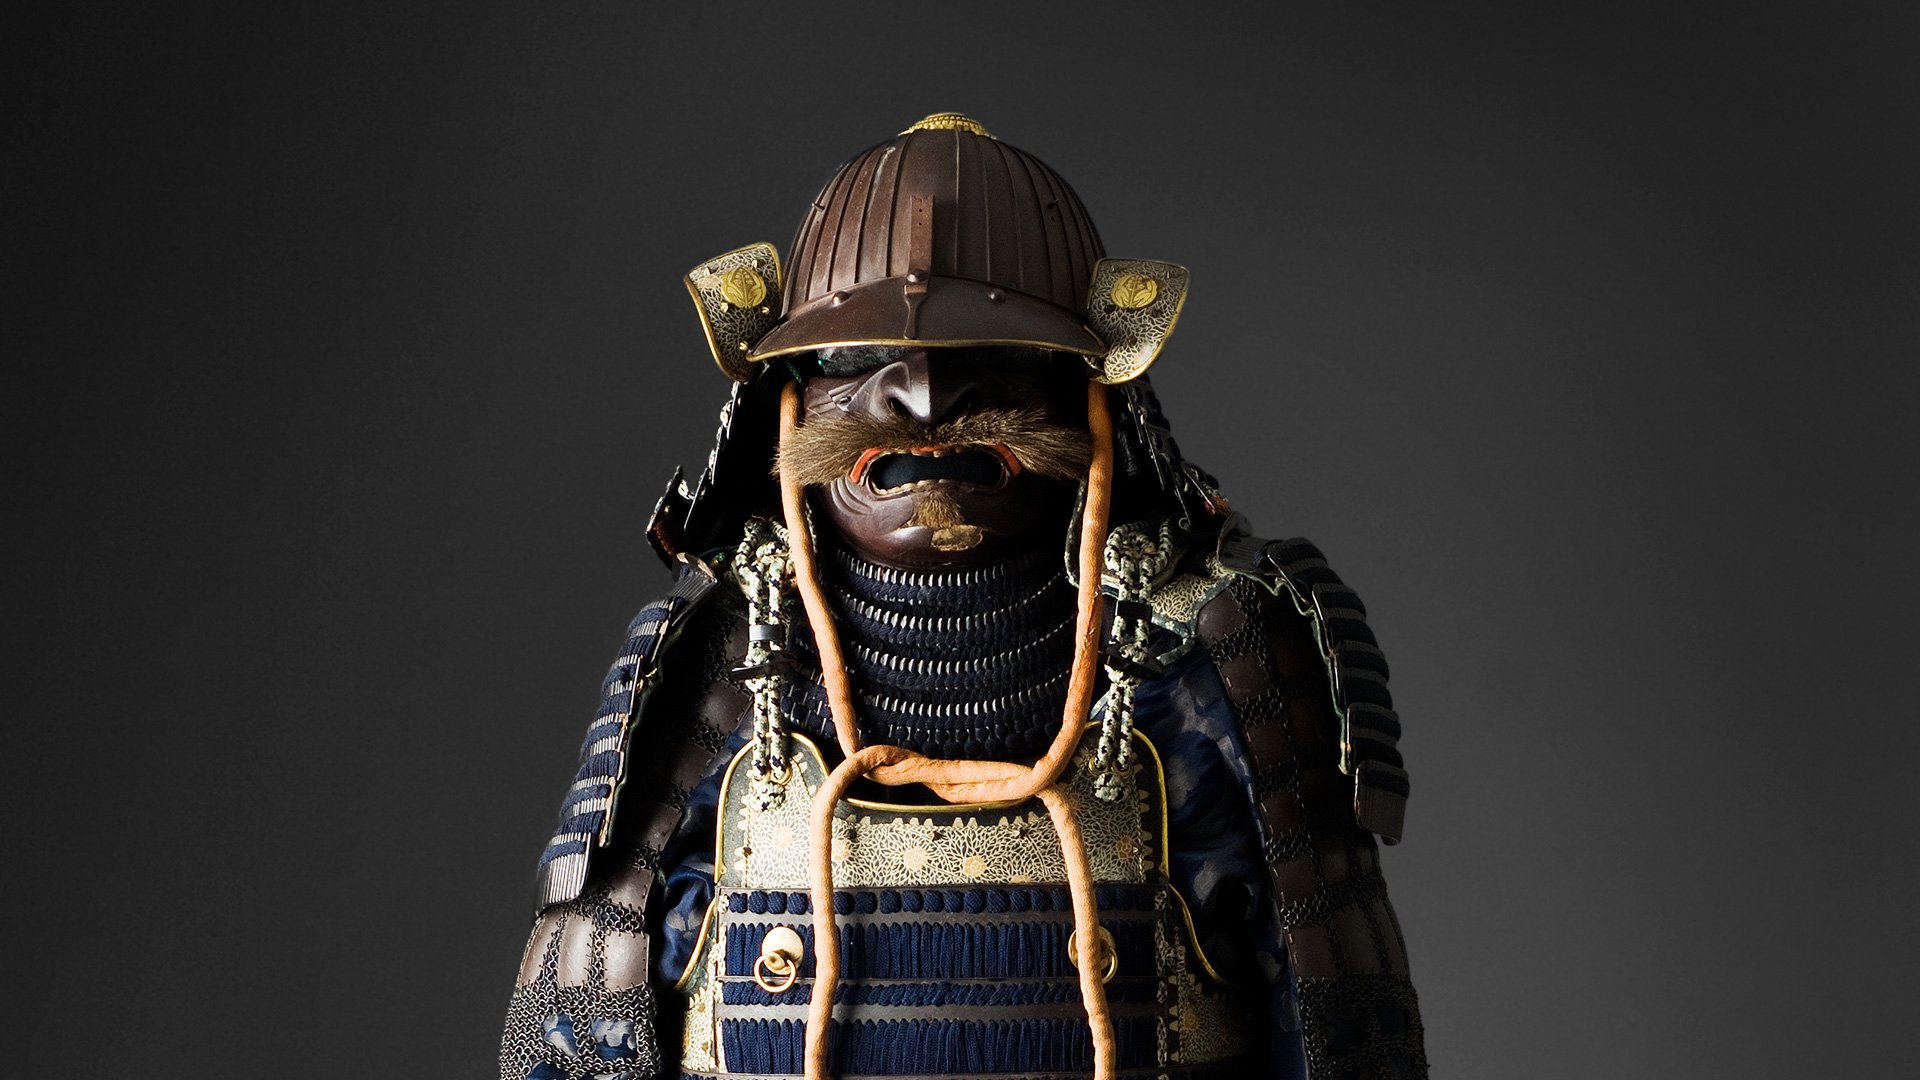 Samurajrustning ur museets samling